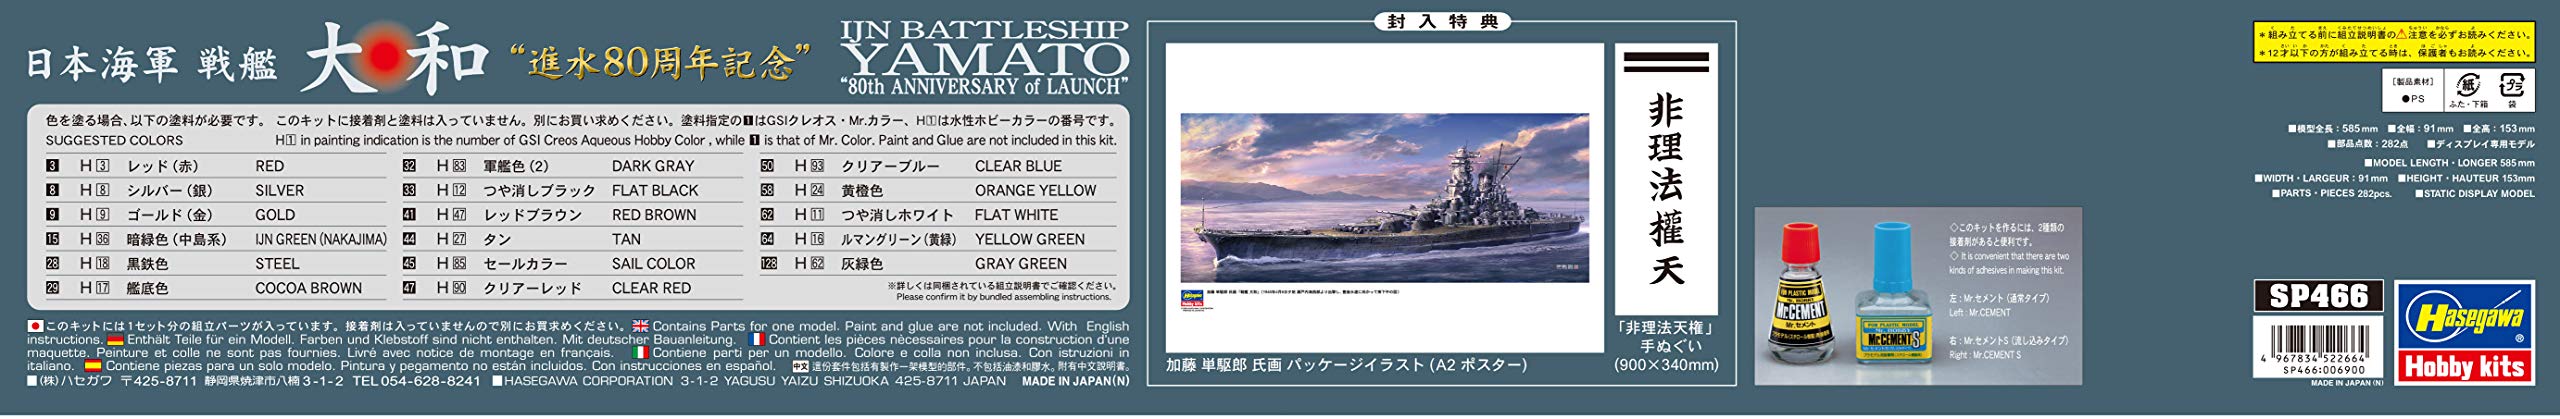 Hasegawa 1/450 Ijn Battleship Yamato lance le modèle en plastique japonais du 80e anniversaire